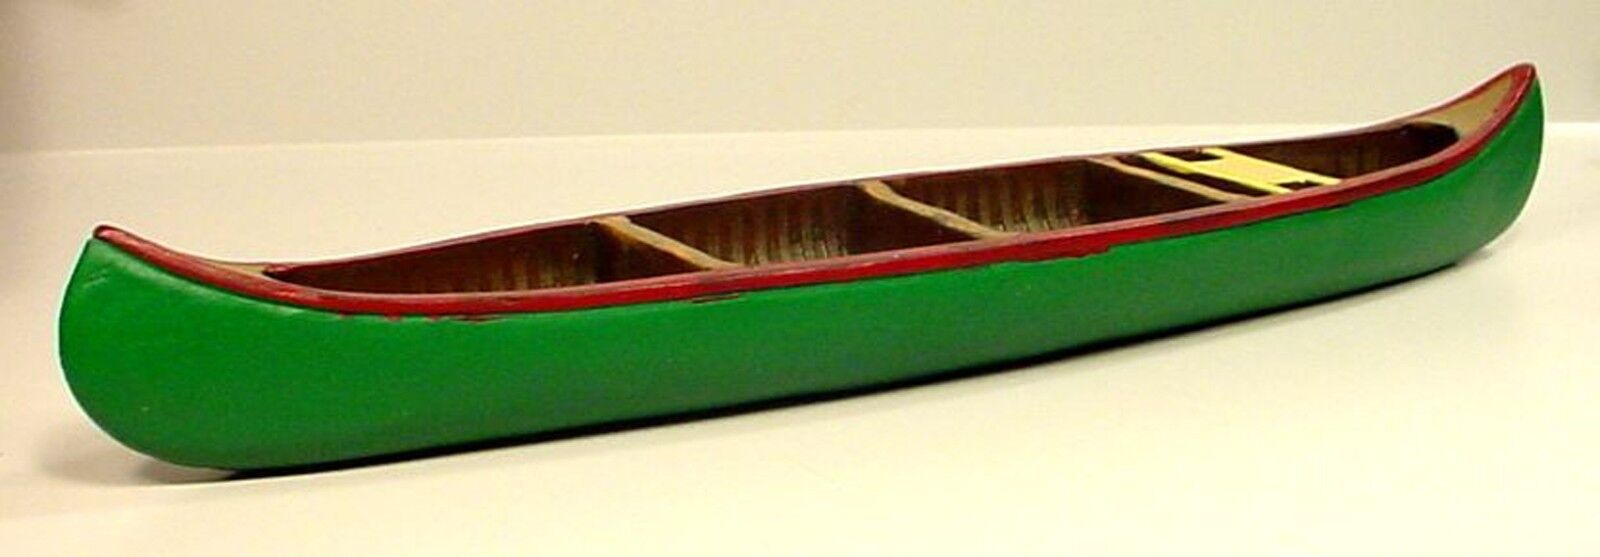 Canoe Premium Custom Miniature 1/24 Scale G Scale Diorama Accessory Item